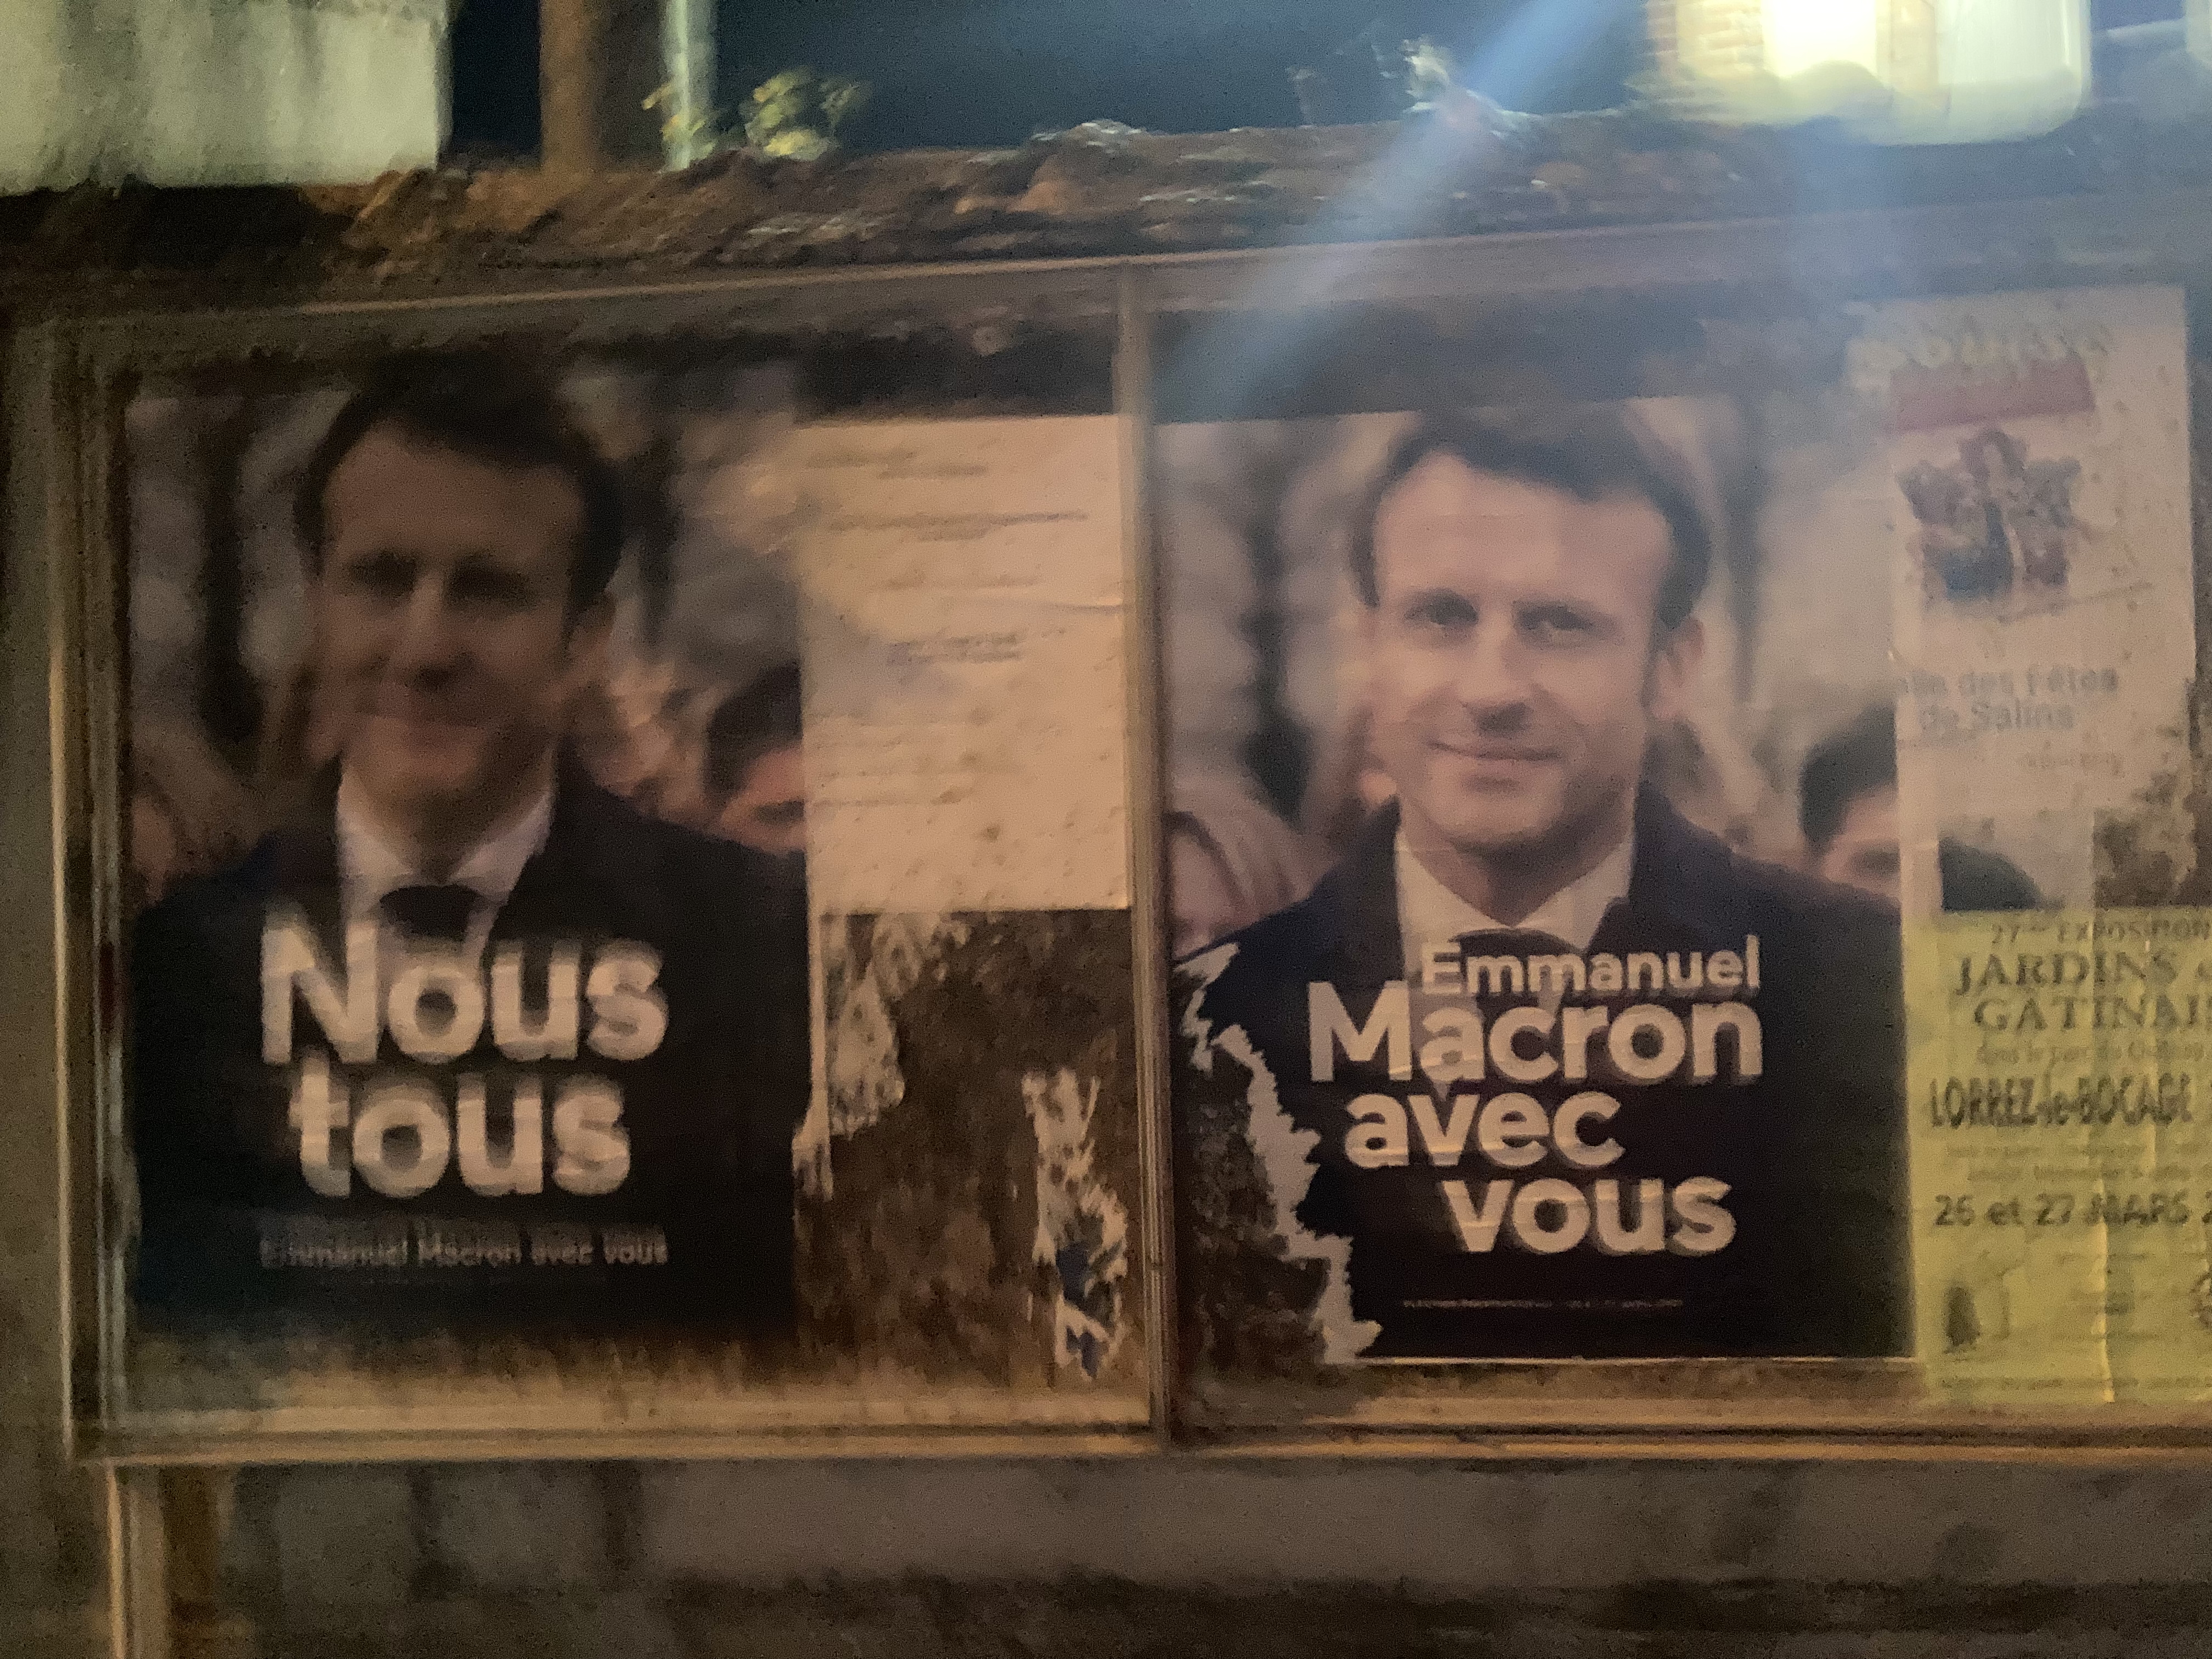 la première et la dernière affiches de la campagne Macron